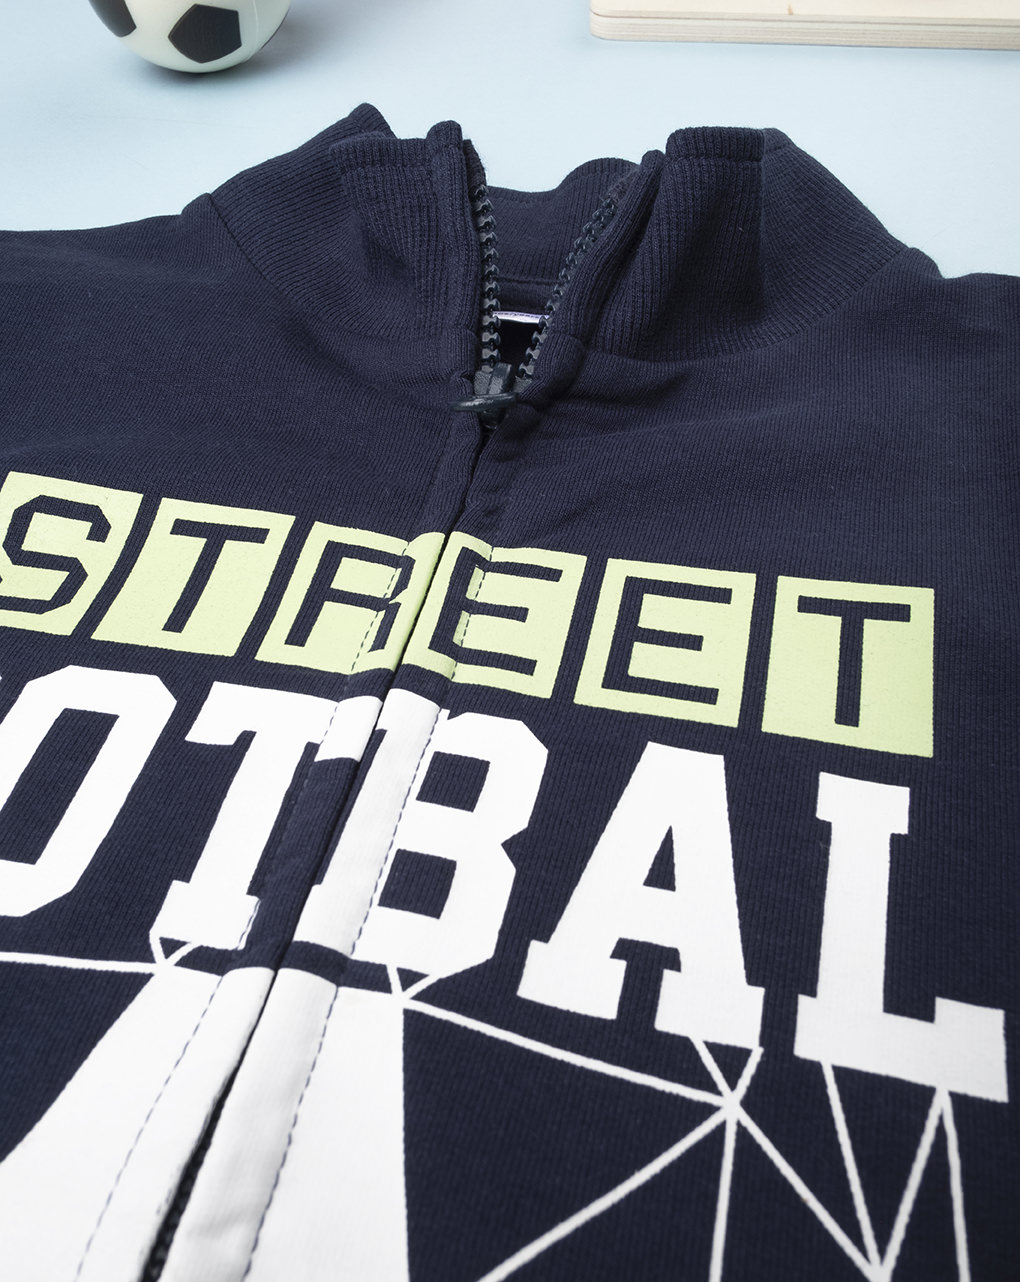 Menino felpa "street football" - Prénatal